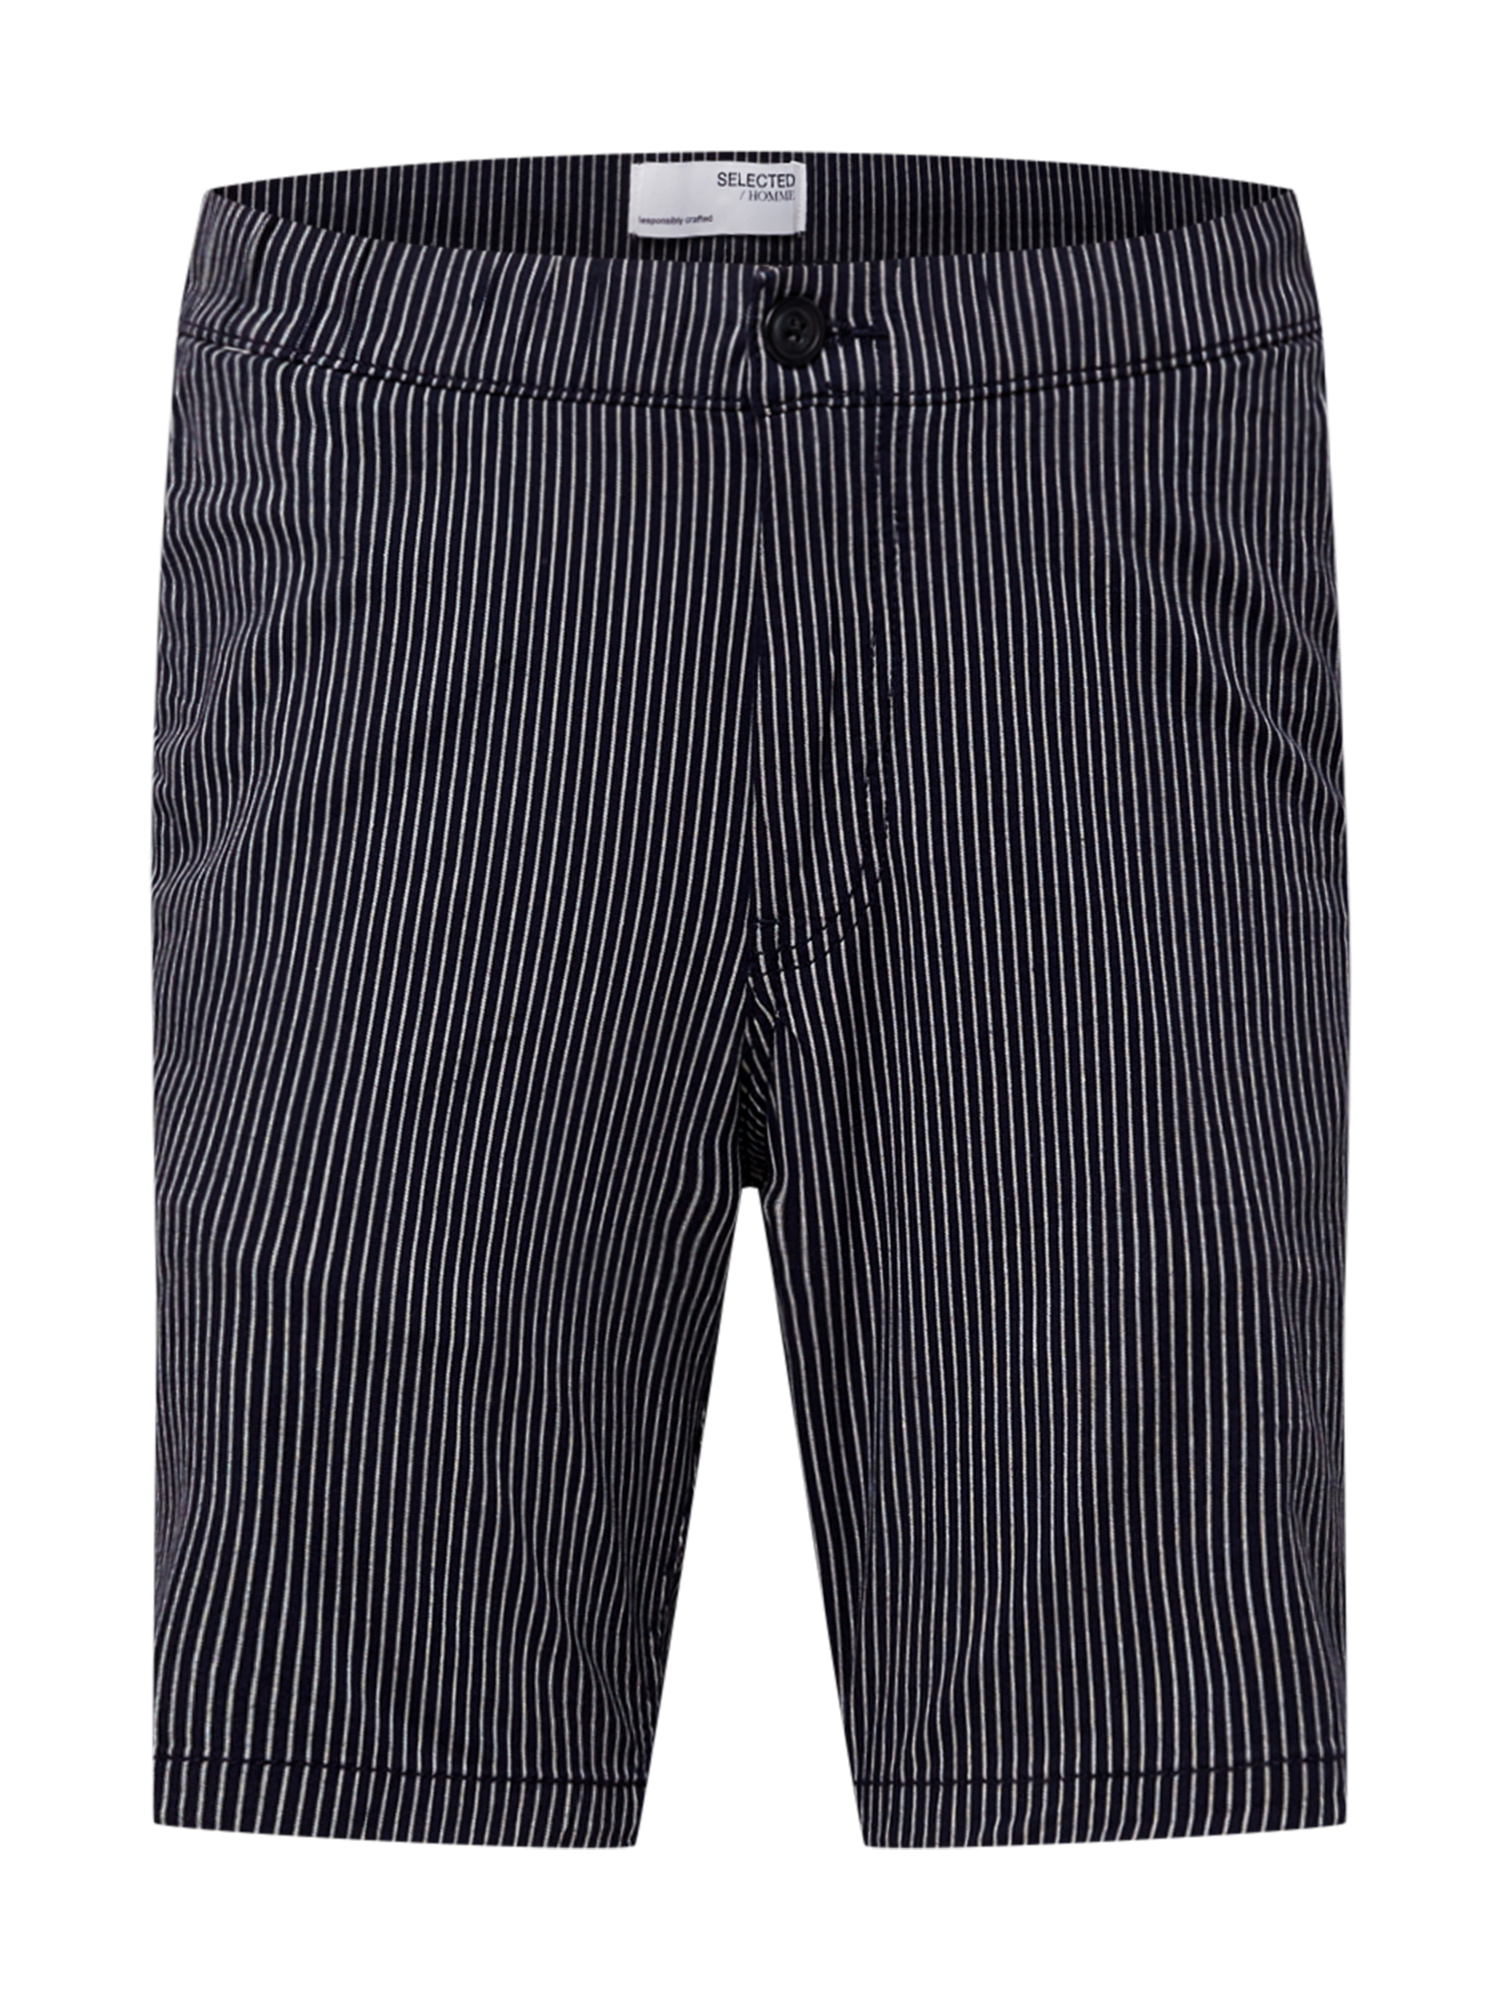 Odzież Spodnie SELECTED HOMME Spodnie ROY w kolorze Granatowym 